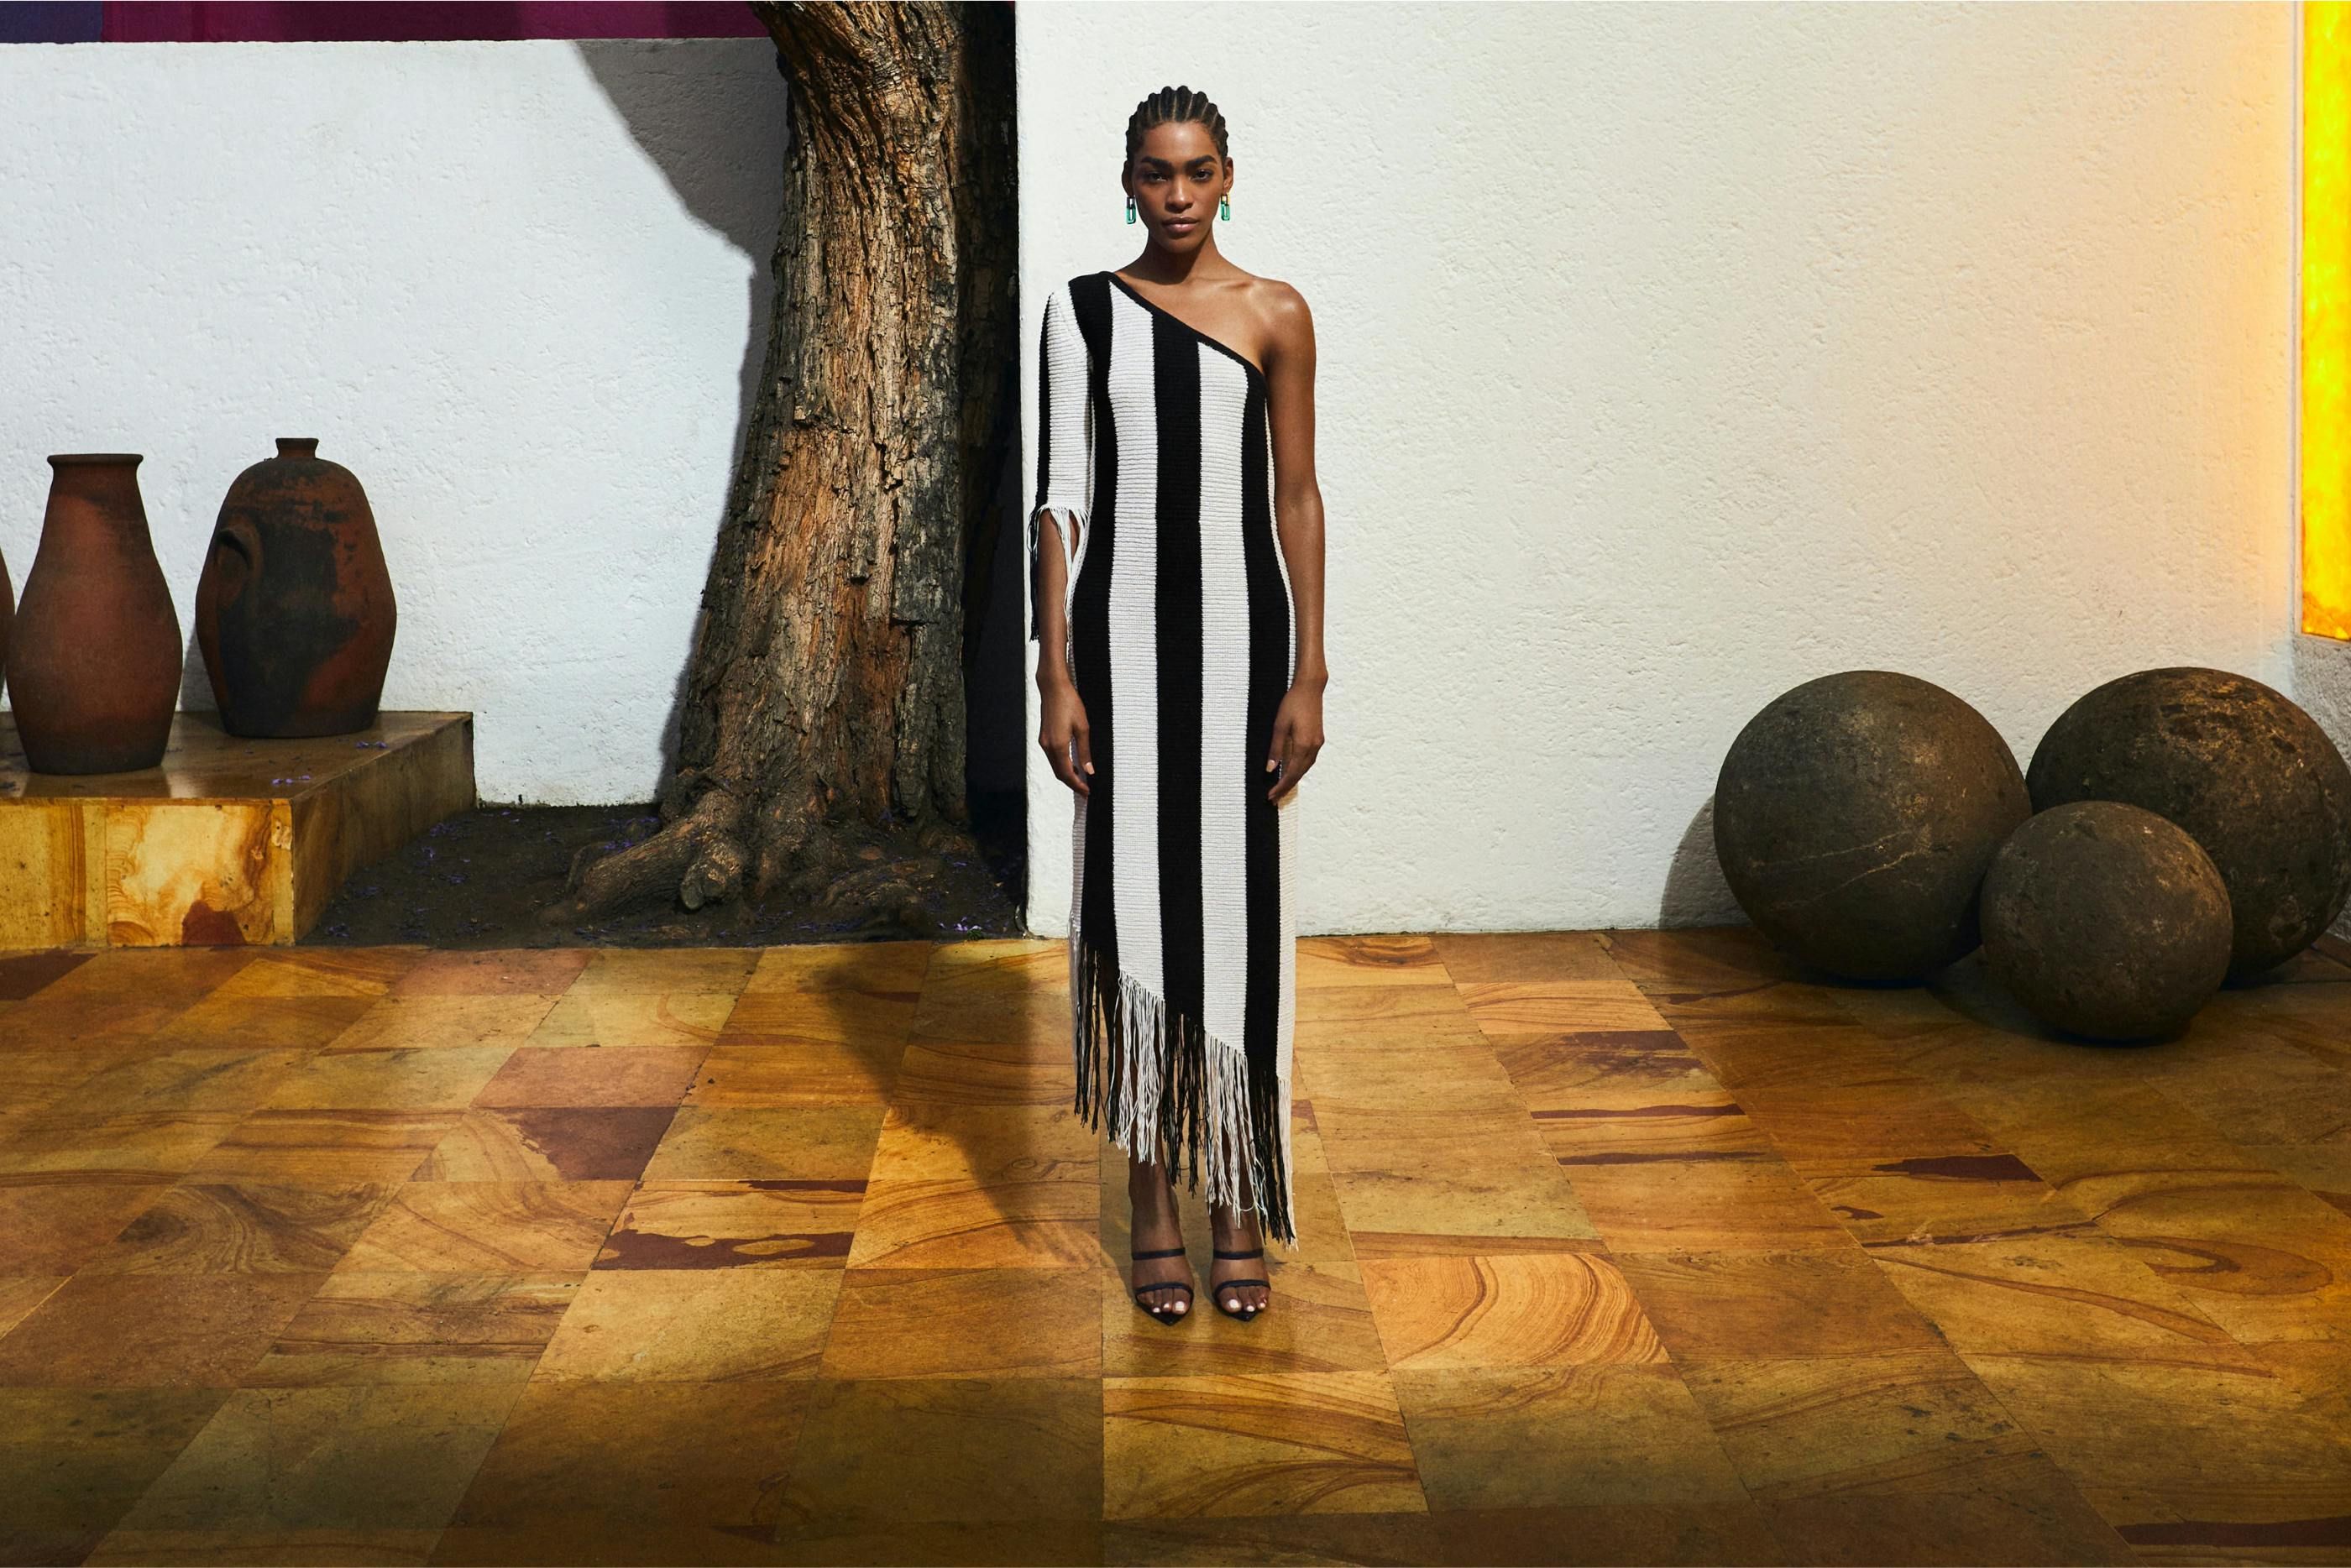 Model wearing BCBG dress standing on wooden floor